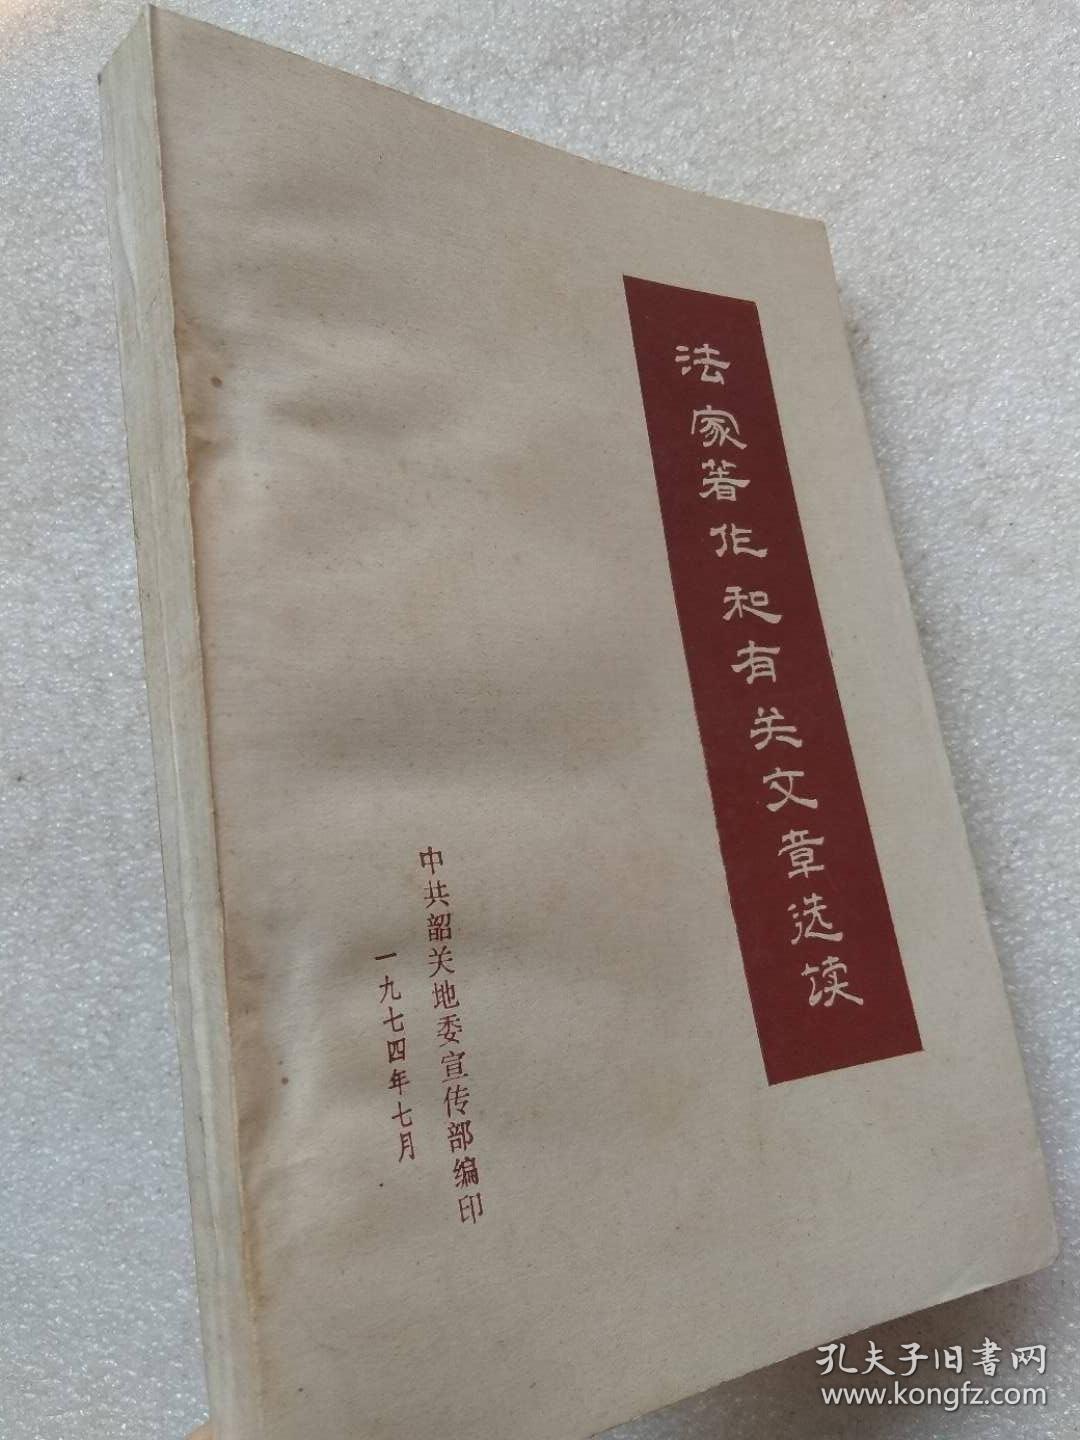 法家著作和有关文章选读--上海师大政教系大批判组等编写。中共韶关地委宣传部翻印。1974年。1版1印